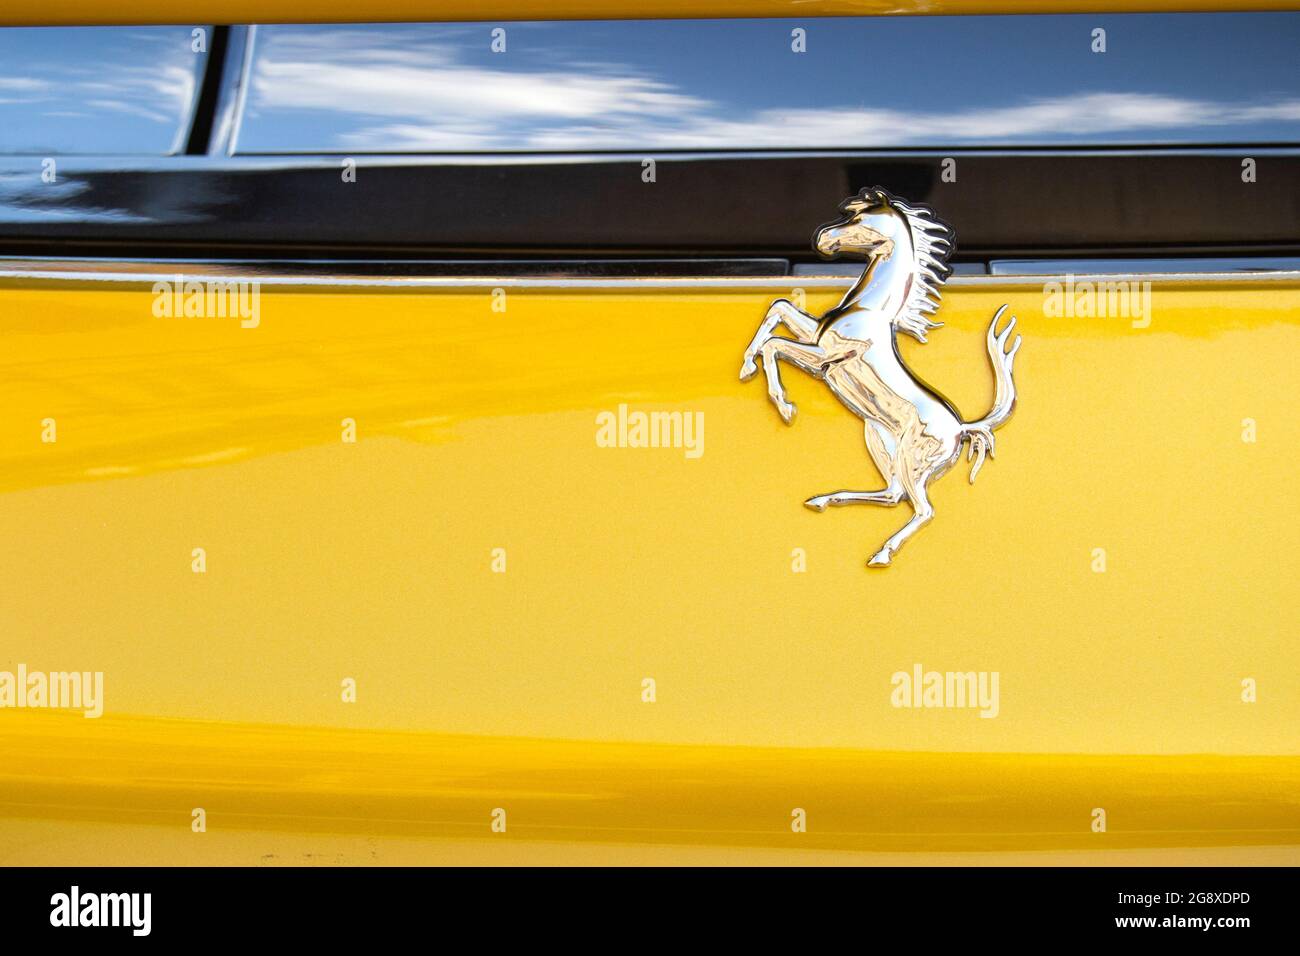 01-07-2021, Modène - Italie. Logo Ferrari sur la voiture de sport lors de l'exposition Motor Valley 2021. Concept de technologie, style de vie de luxe, style italien, spe Banque D'Images